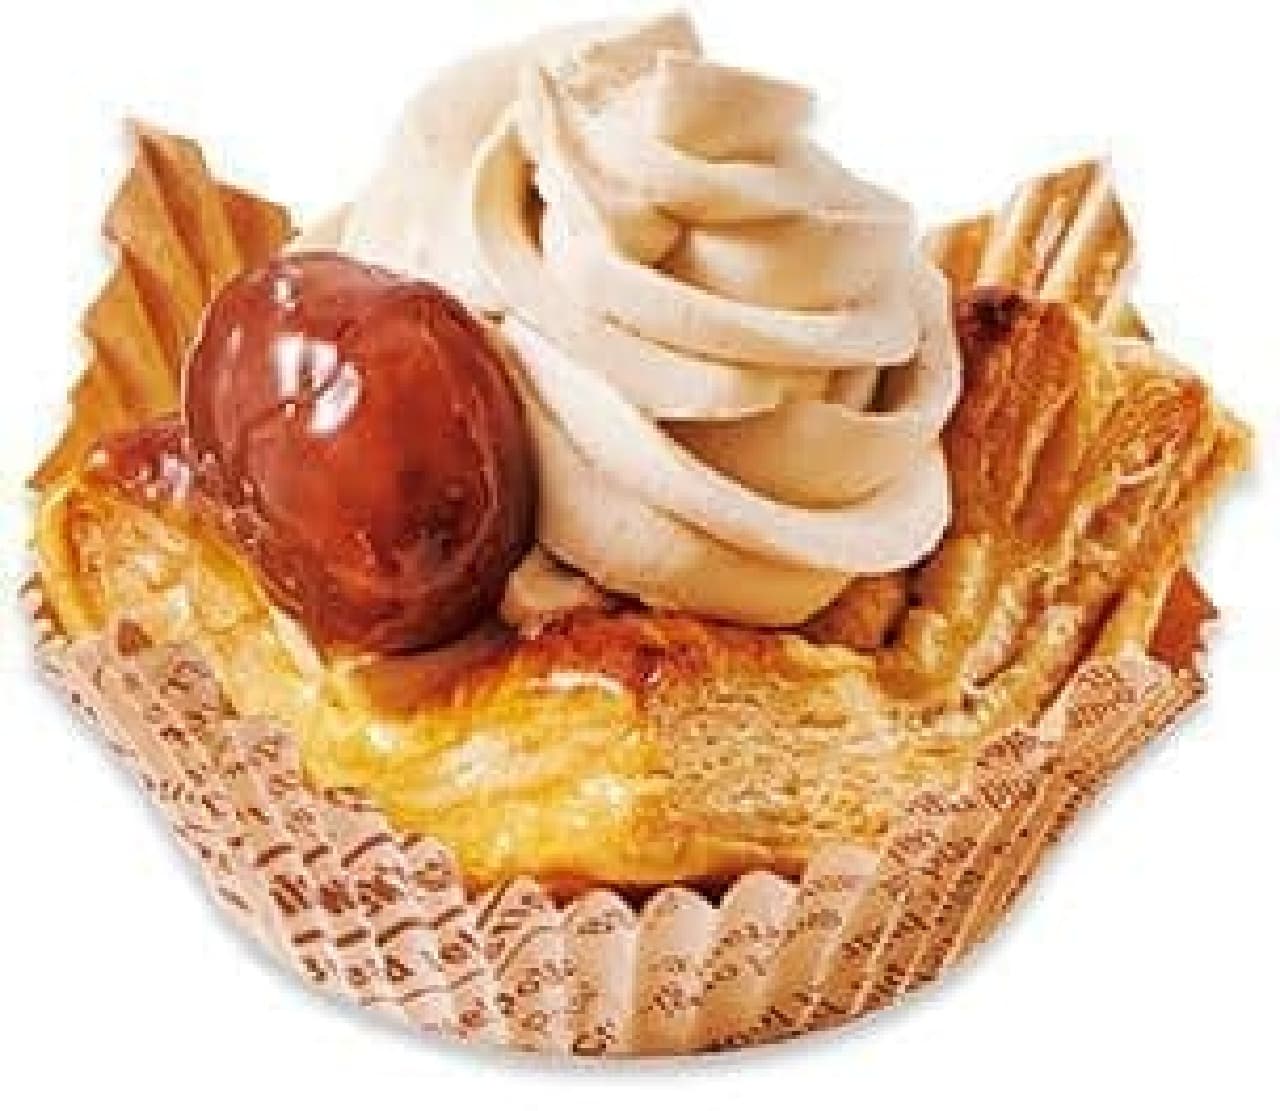 Fujiya pastry shop "Marron Cream Pie"